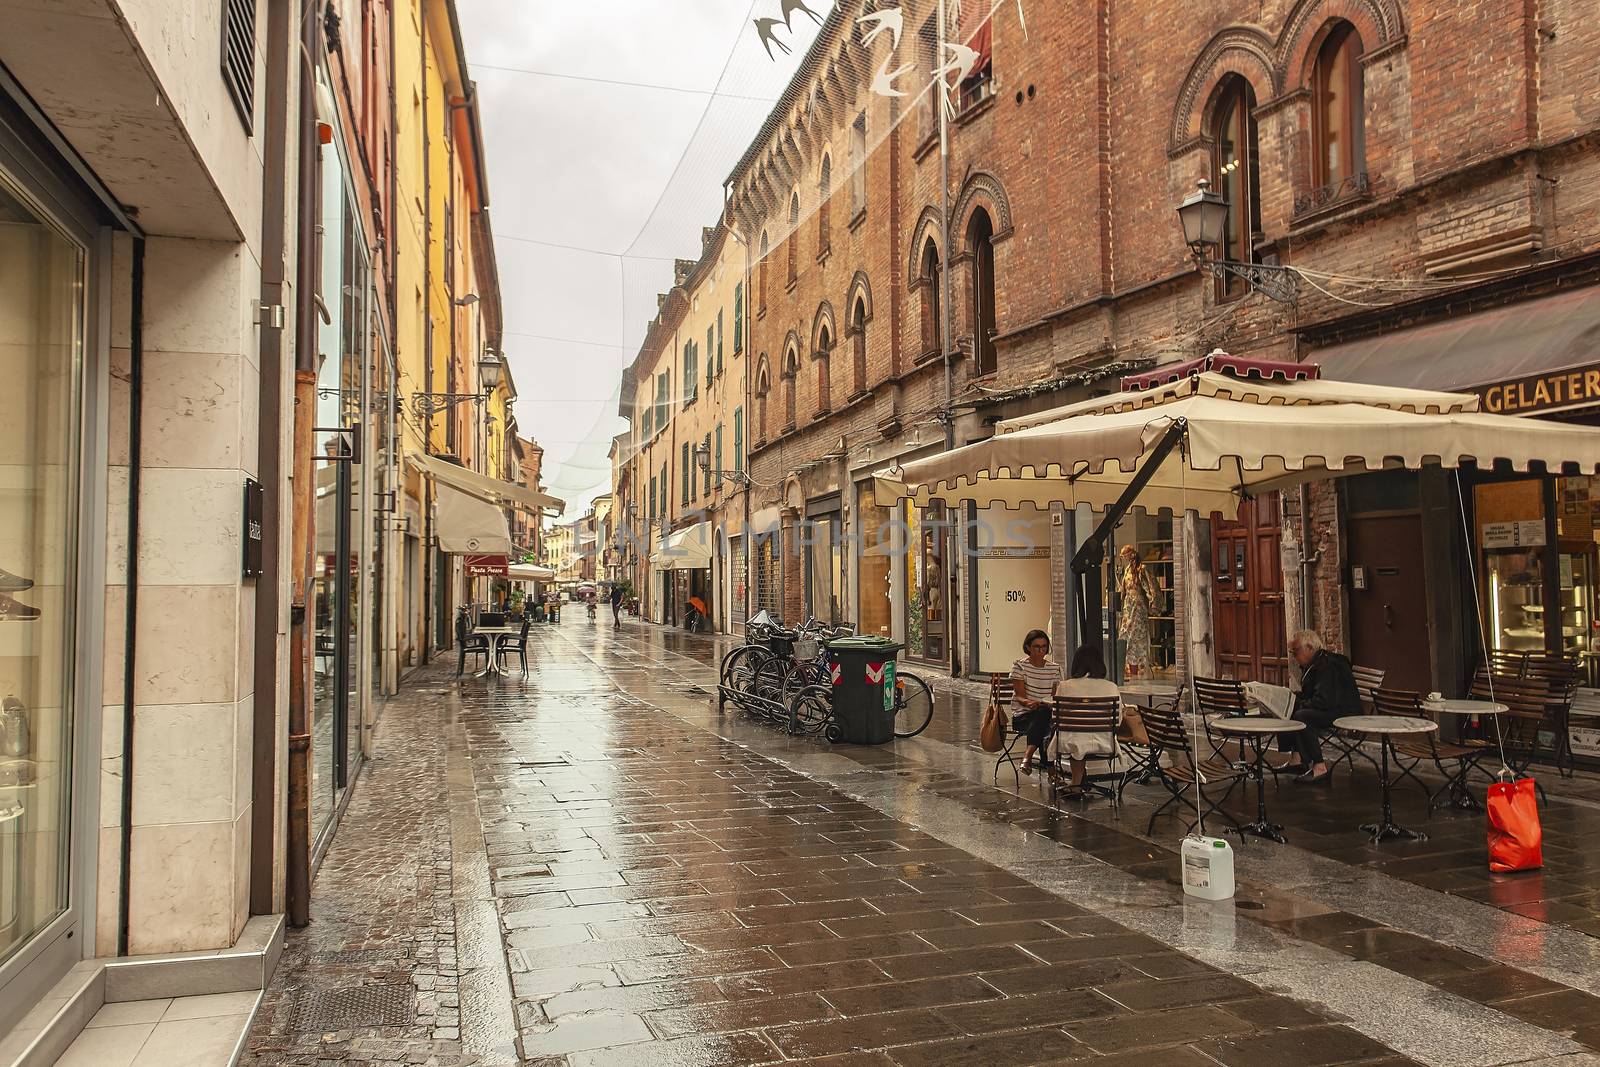 FERRARA, ITALY 29 JULY 2020 : Alley with people walking in Ferrara in Italy